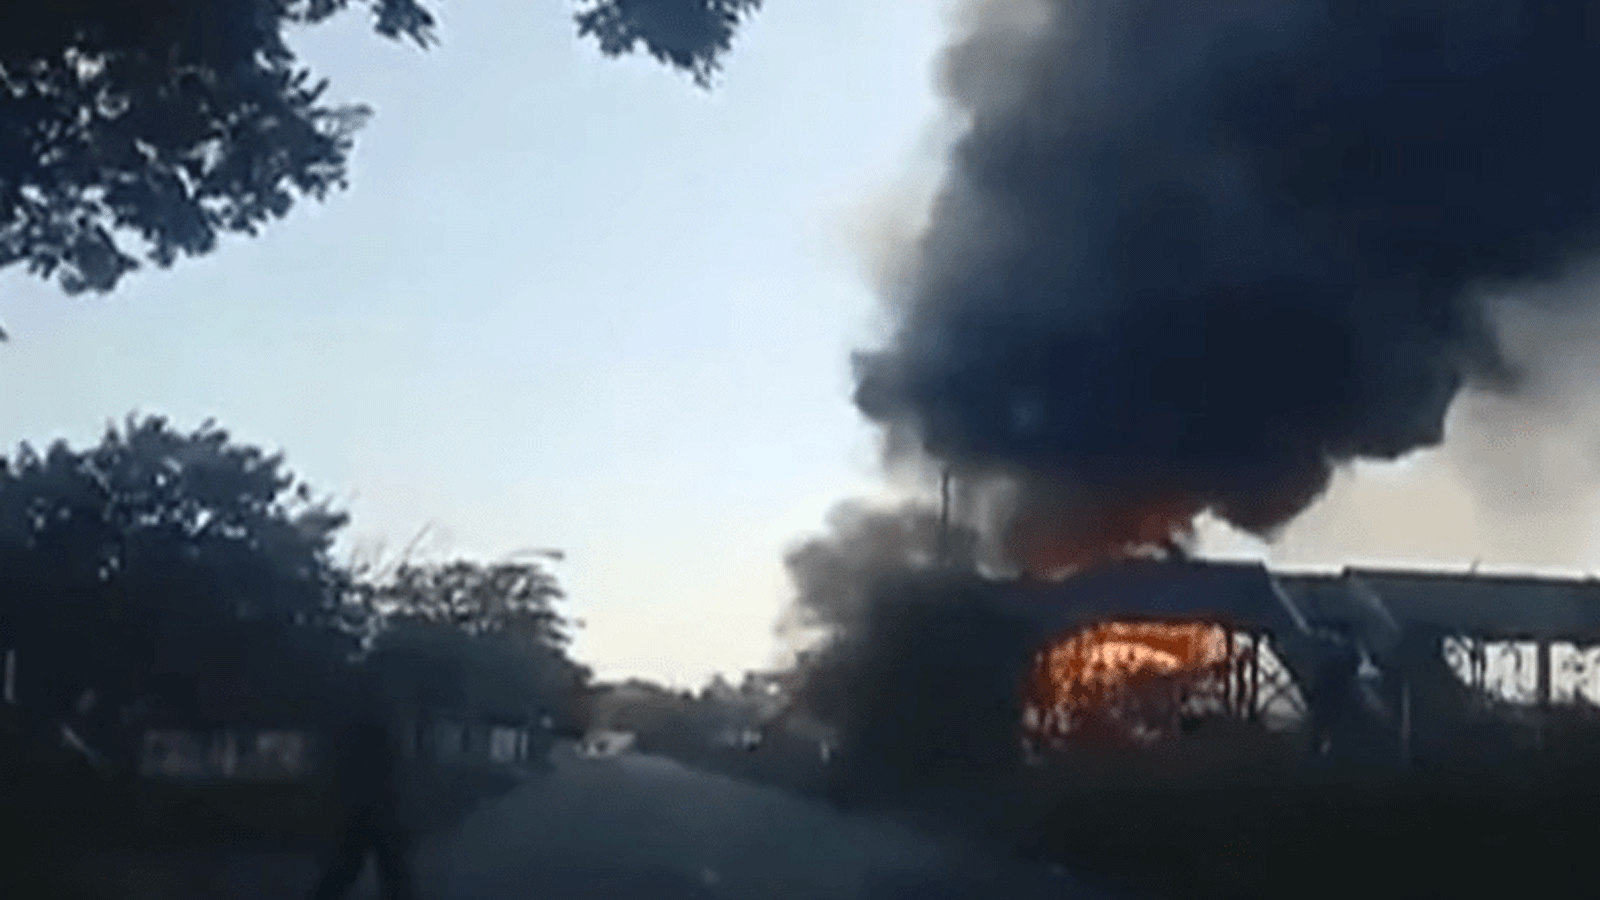 انفجار صهريج وقود في جنوب أفريقيا على بعد حوالى 40 كيلومترا شرق جوهانسبرغ